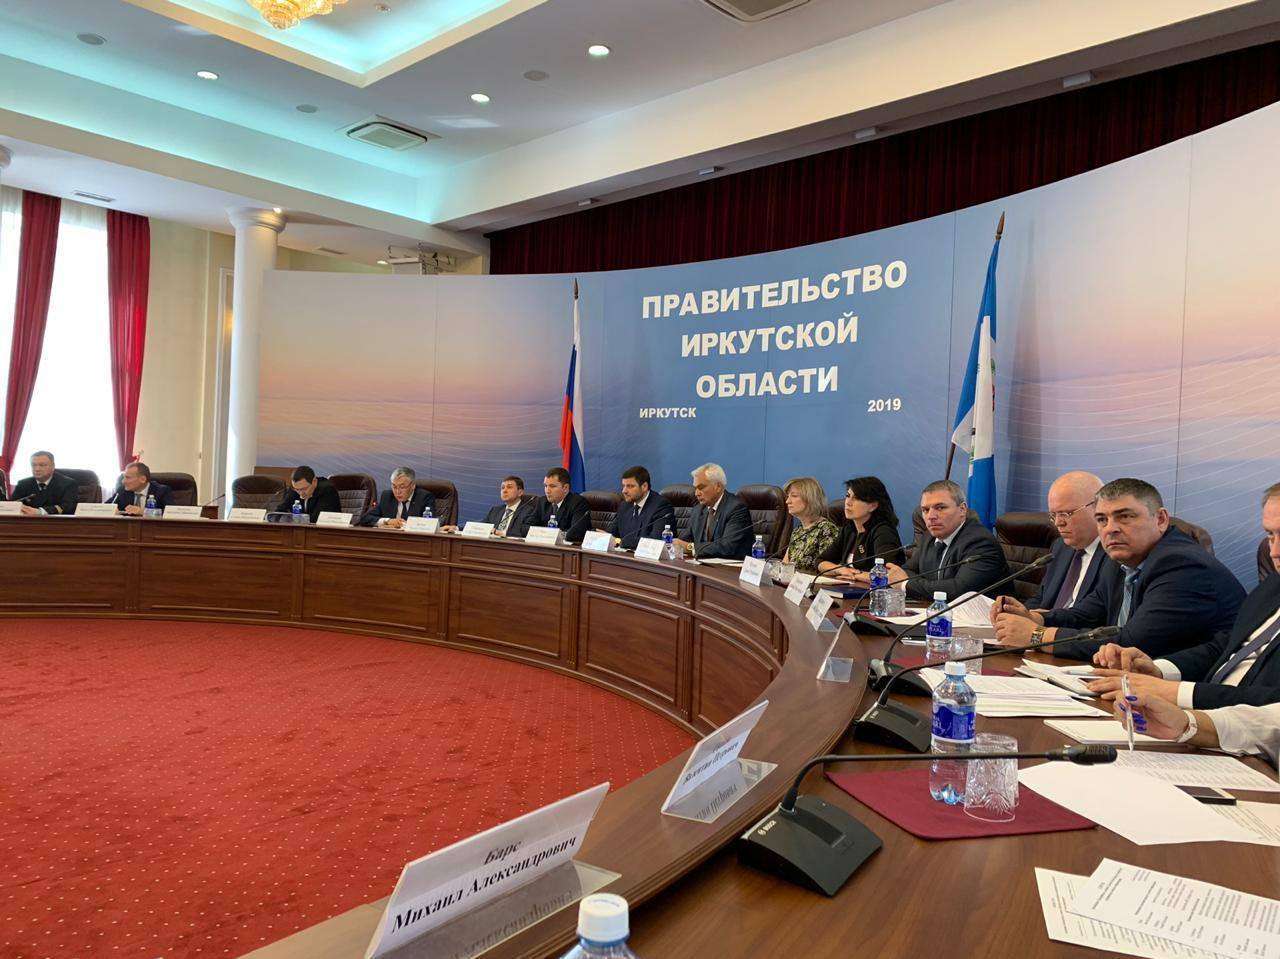 Правительство Иркутской области Навигация 2019